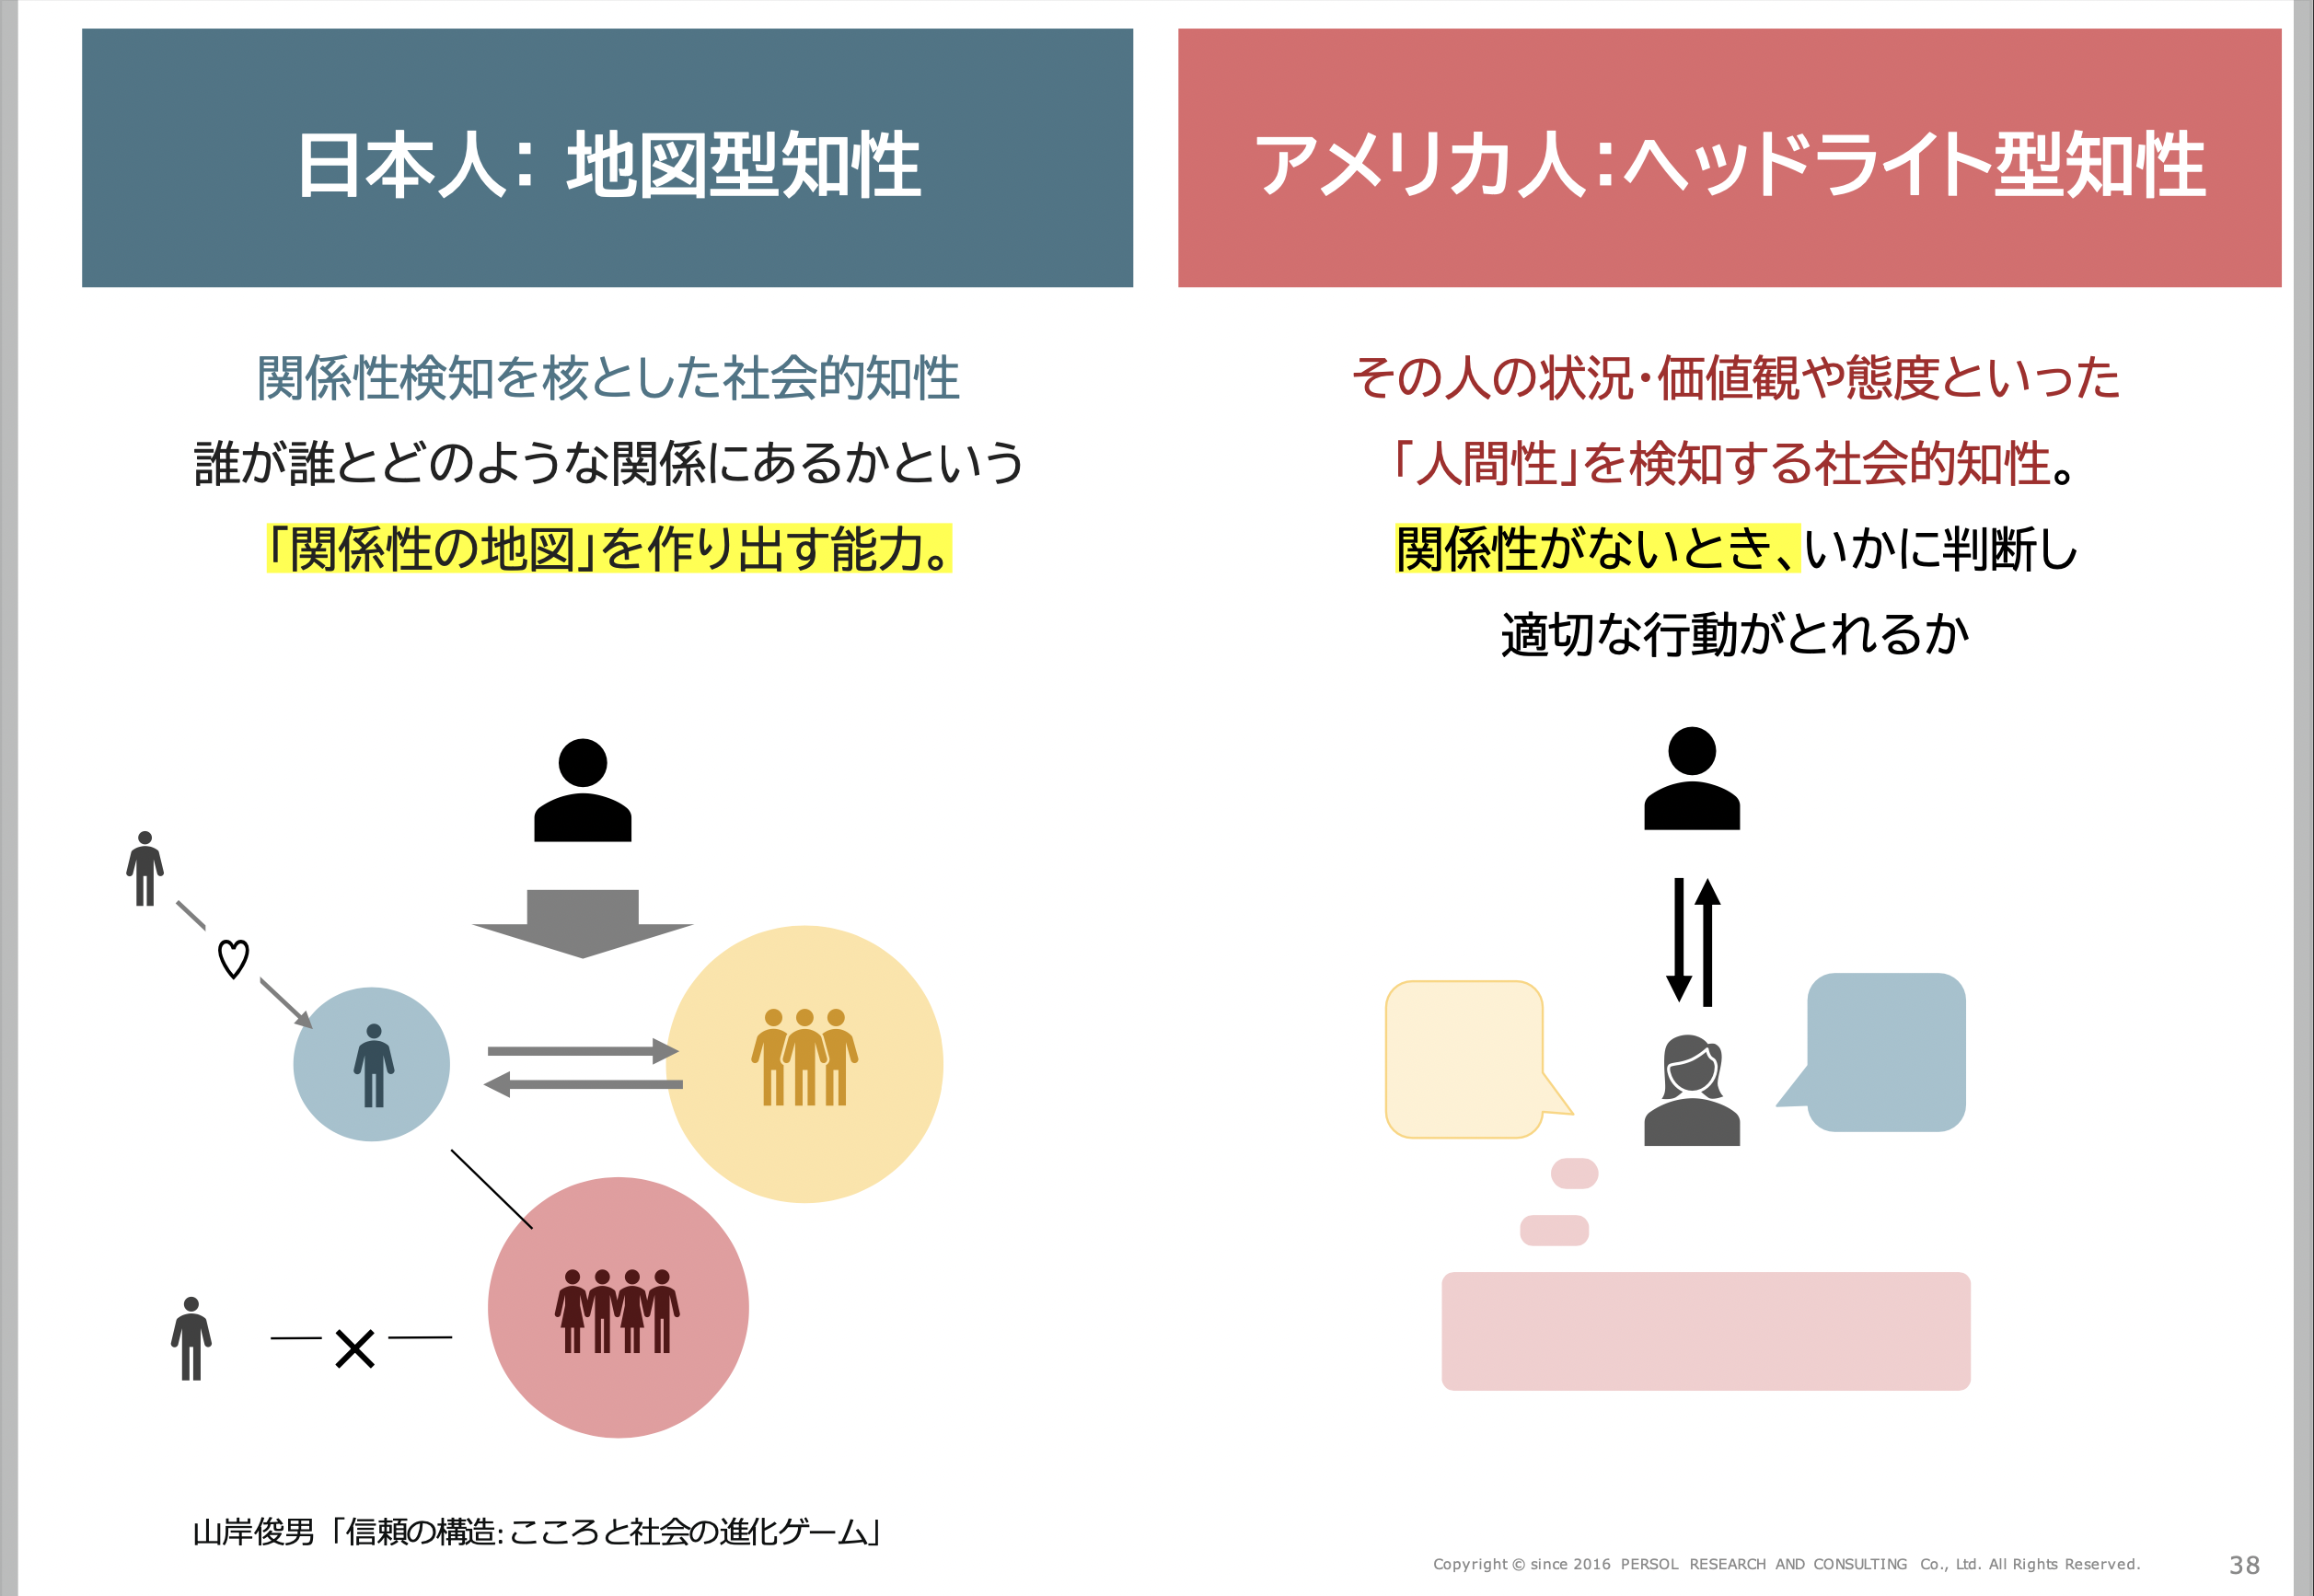 日本人とアメリカ人のコミュニケーションの特徴の違いをまとめたスライド。日本人は「誰が誰とどのような関係にあるのか」という「関係性の地図」を作り出す能力が高いとされている